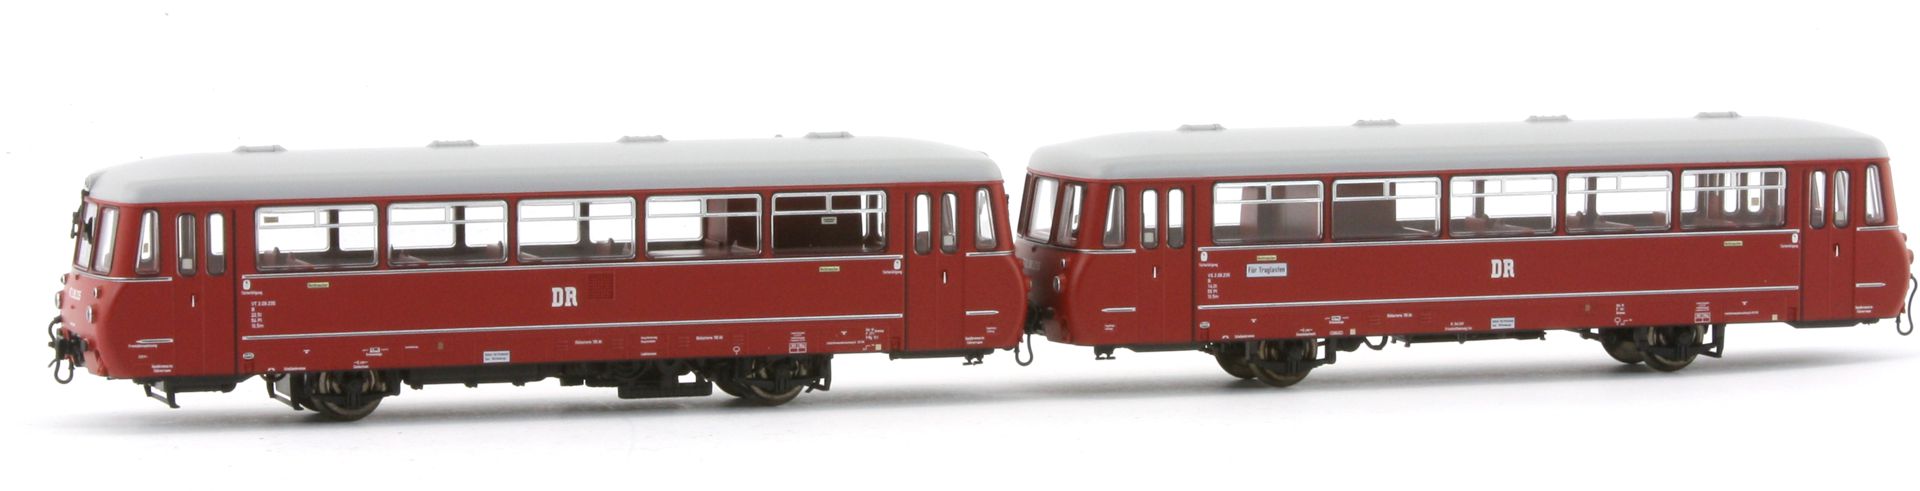 Piko 52880-2 - Triebwagen, VT 2.09 235, DR, Ep.III